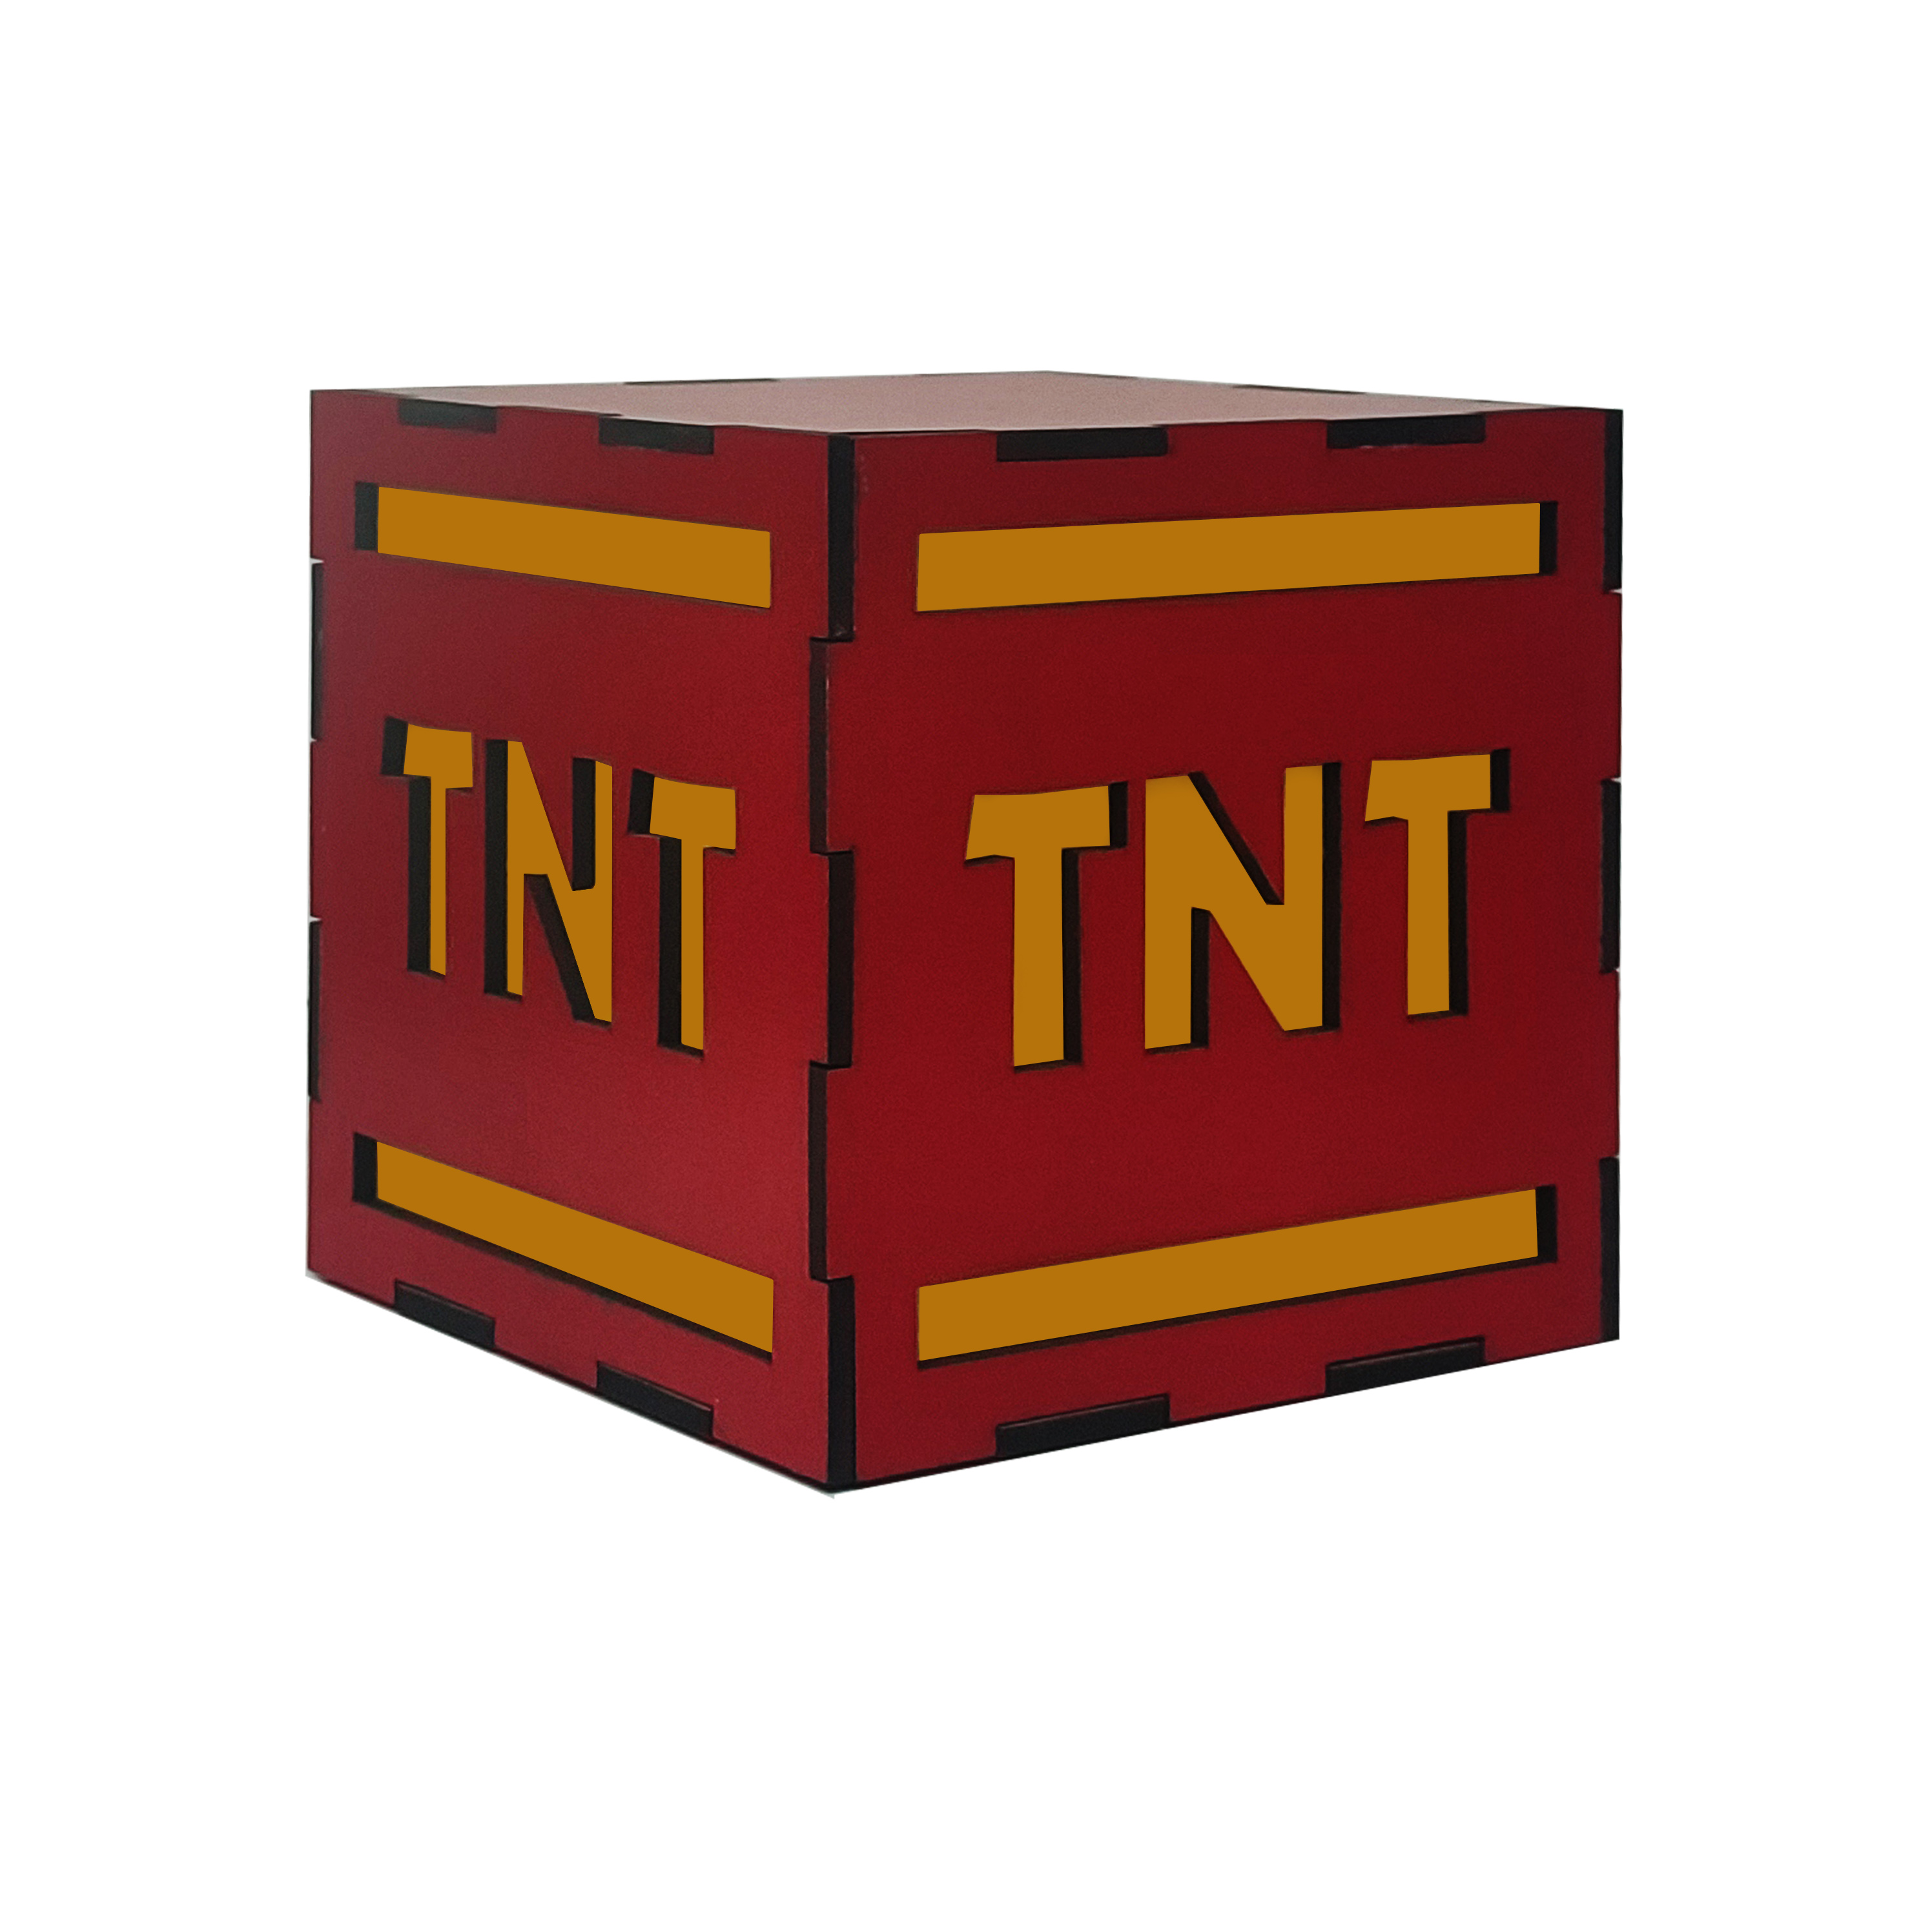  جعبه TNT